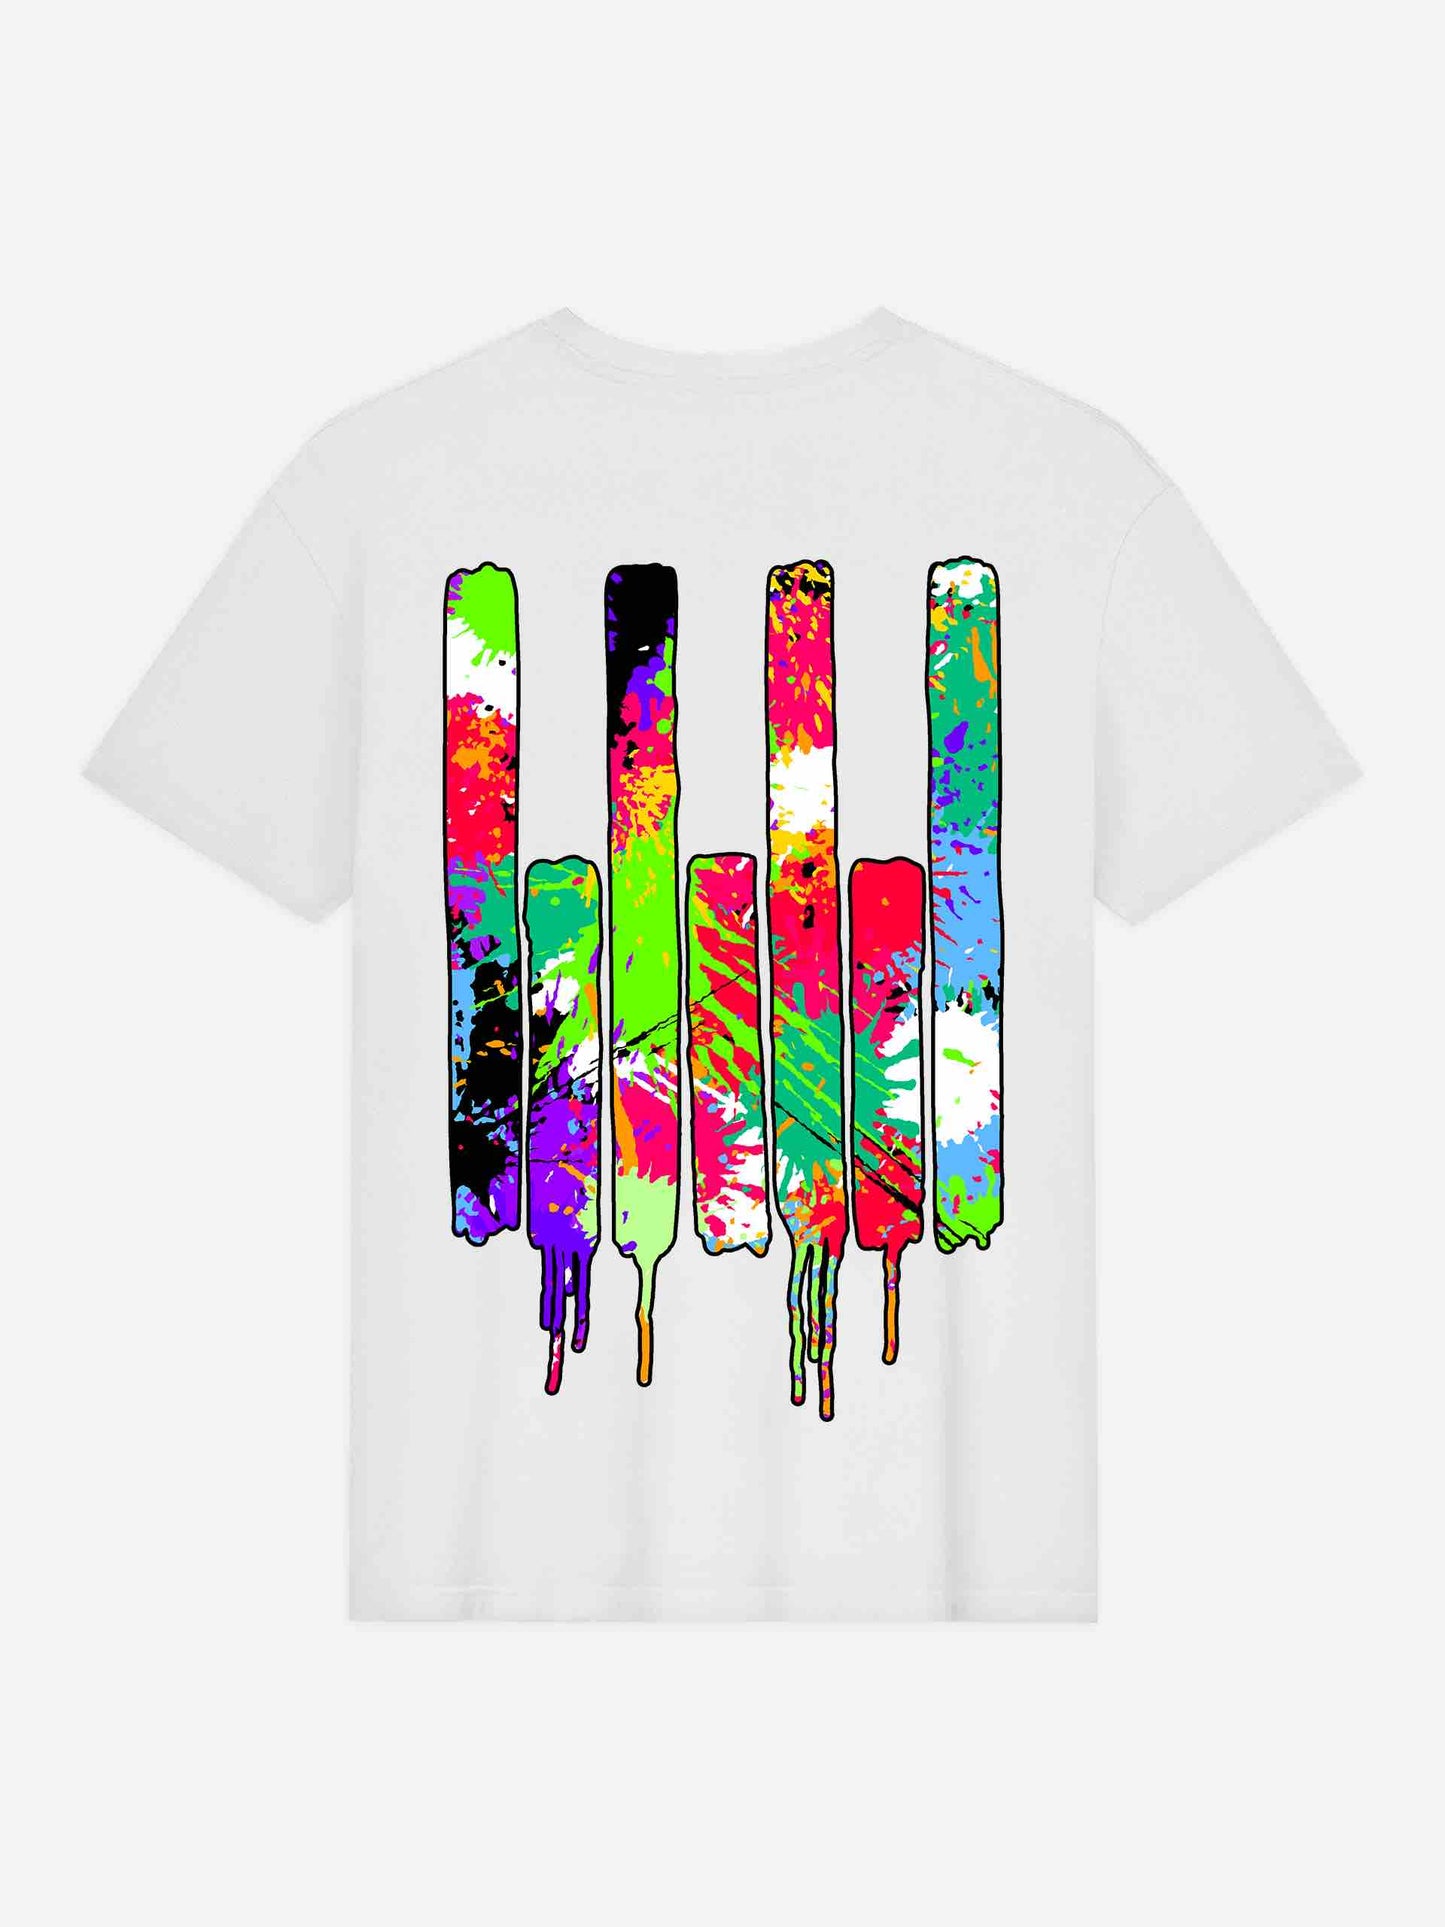 Rave Culture 'RC' Paint Splatters T-Shirt